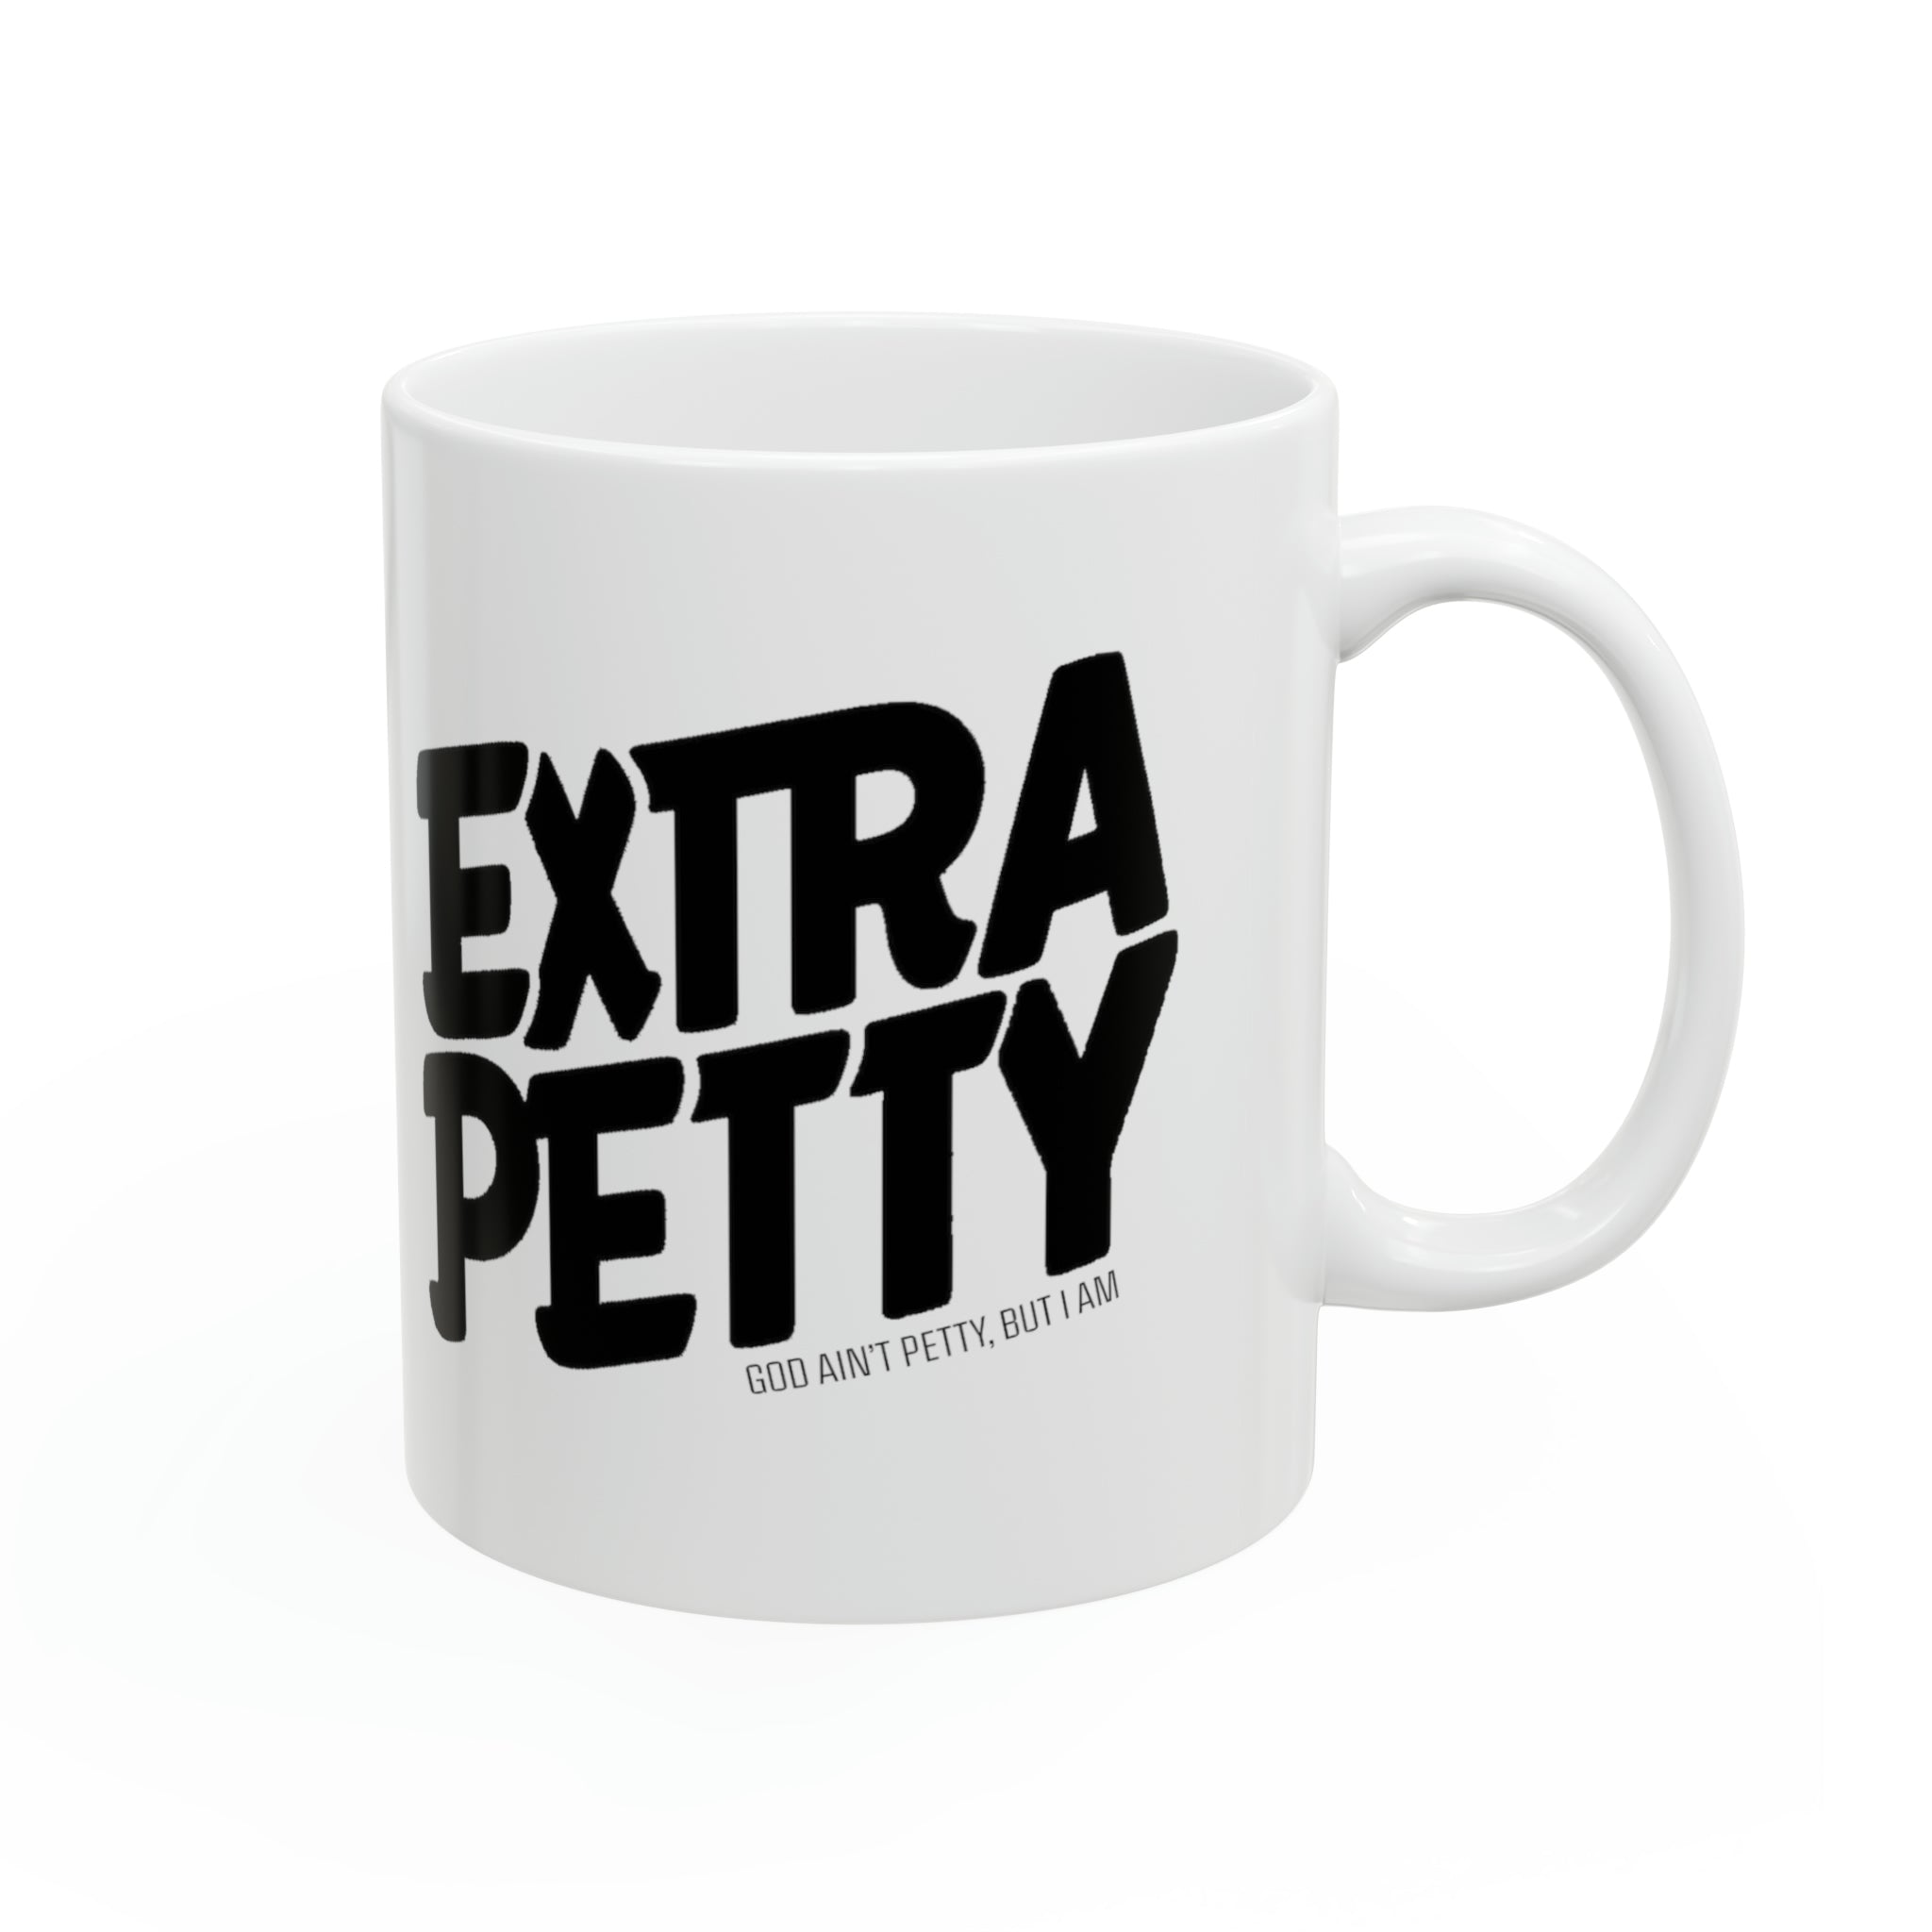 Extra Petty Mug 11oz (White & Black)-Mug-The Original God Ain't Petty But I Am